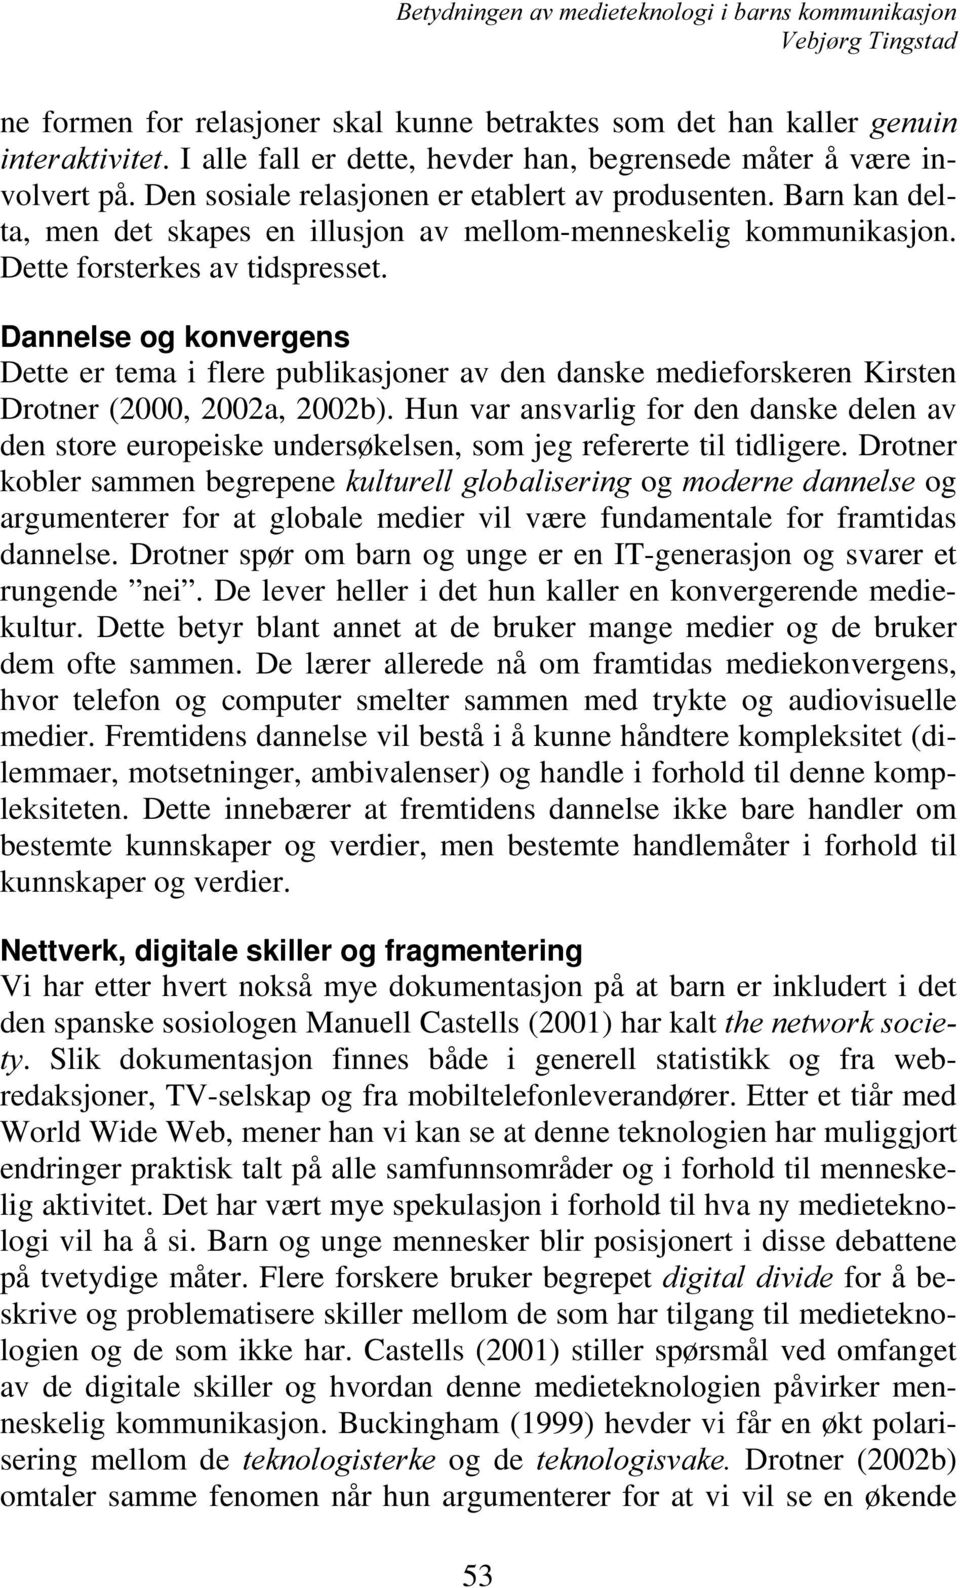 Dannelse og konvergens Dette er tema i flere publikasjoner av den danske medieforskeren Kirsten Drotner (2000, 2002a, 2002b).